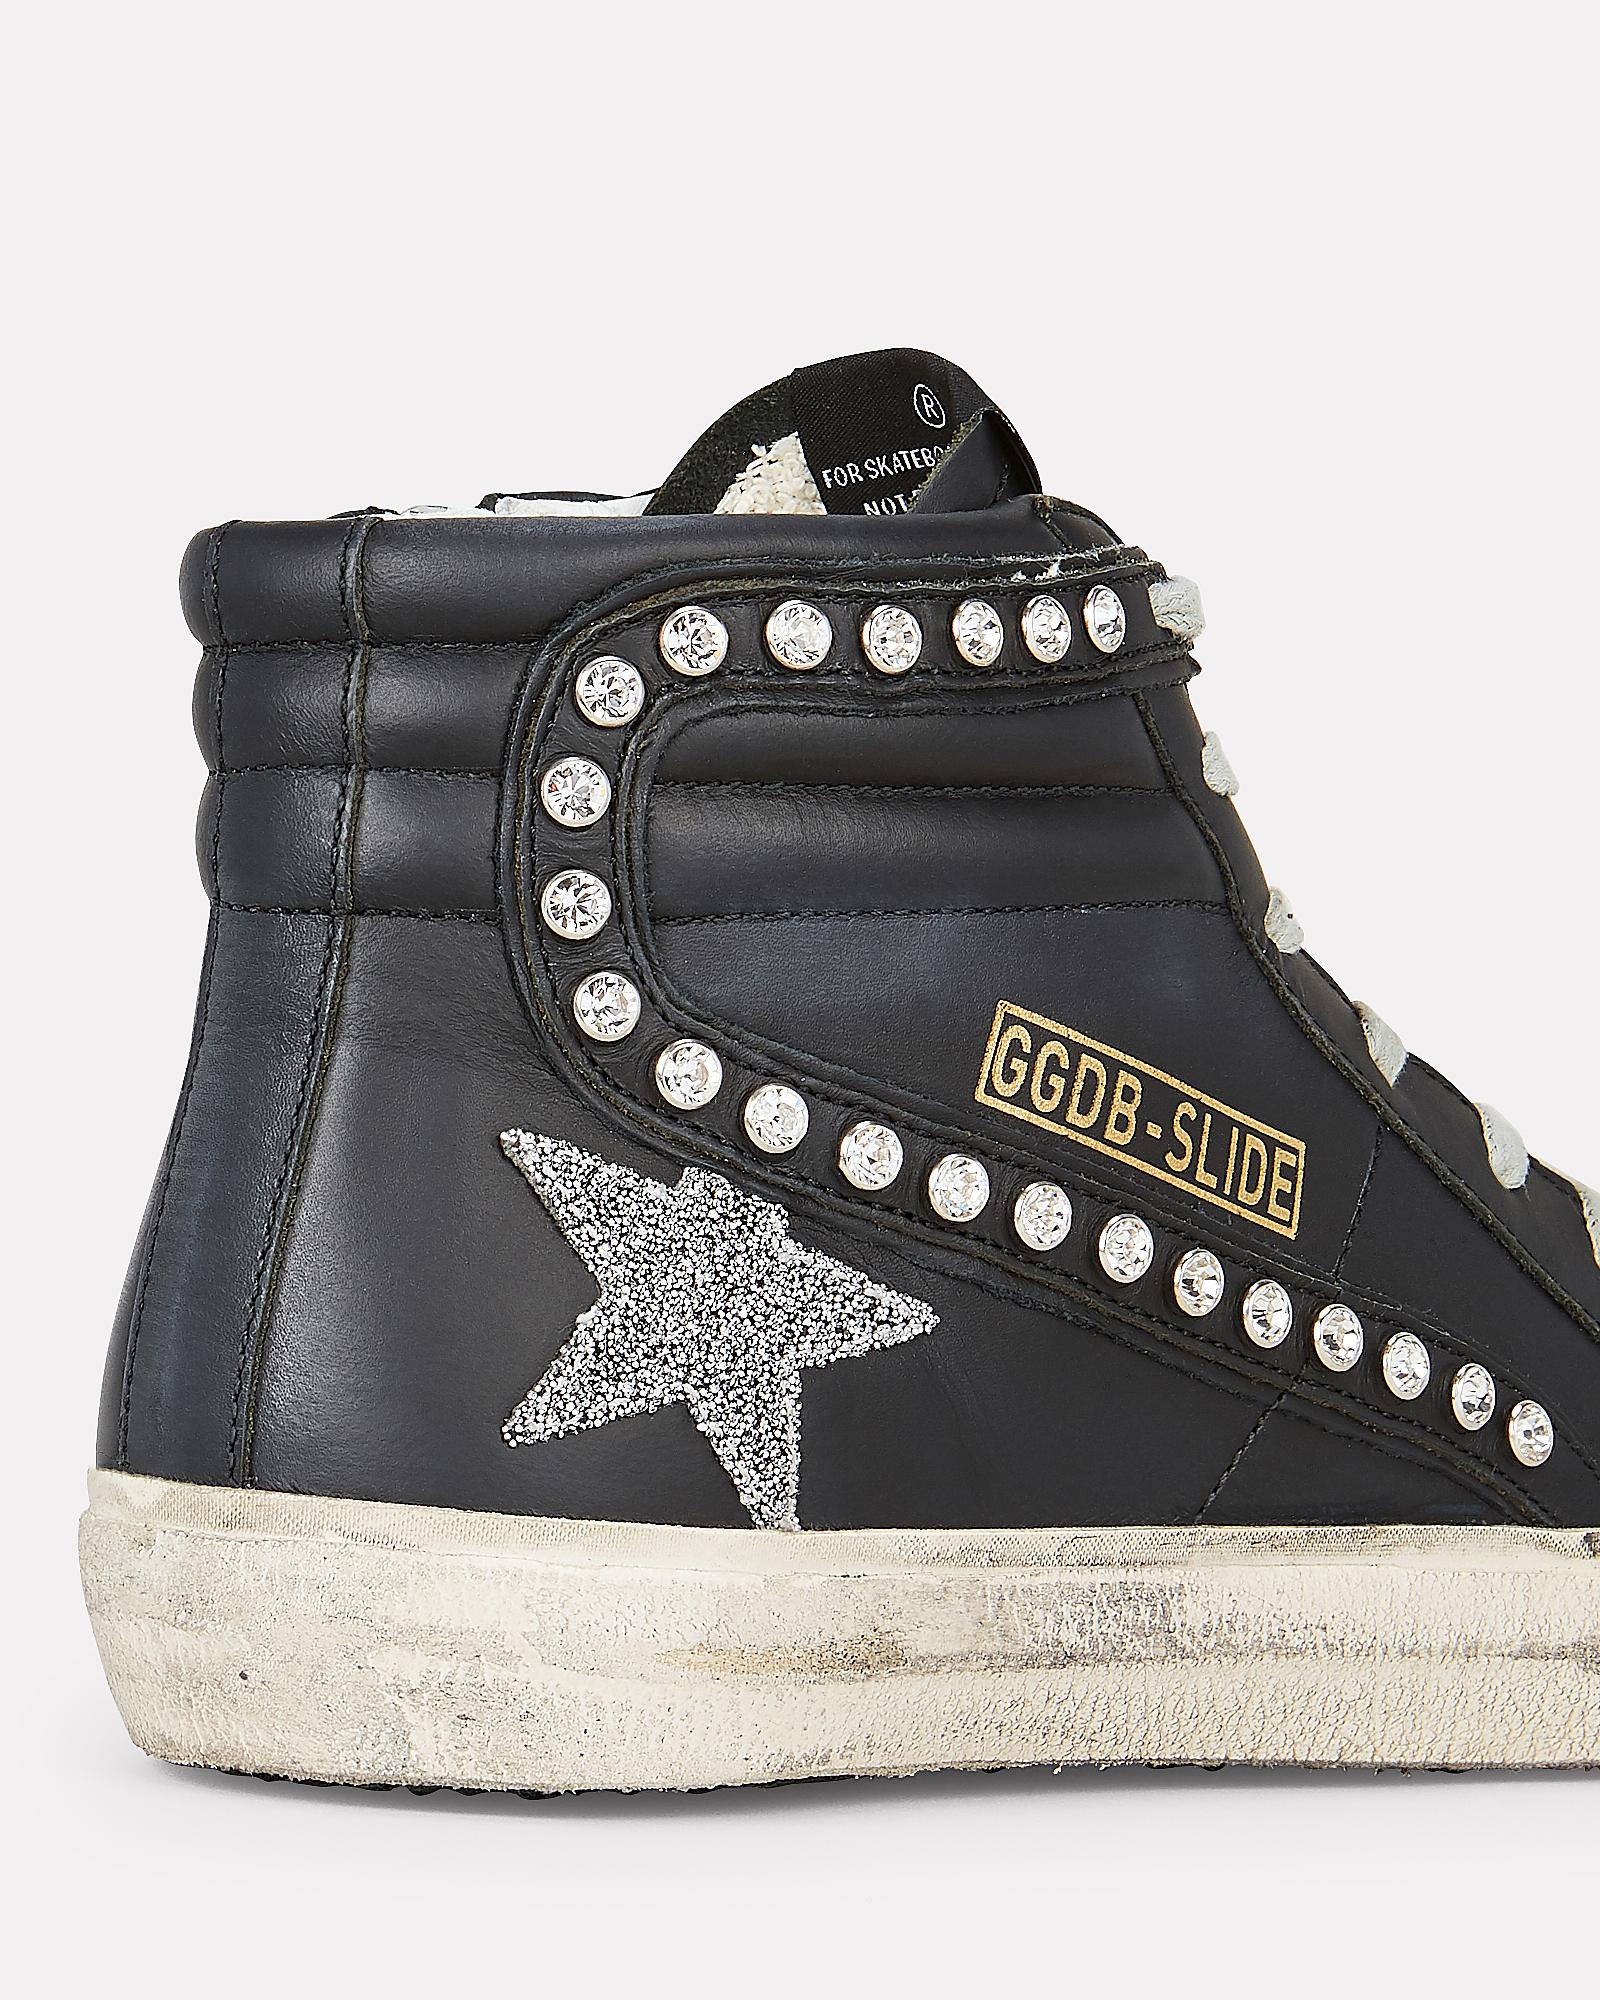 Golden Goose Deluxe Brand Superstar Swarovski Crystal High Top Sneakers